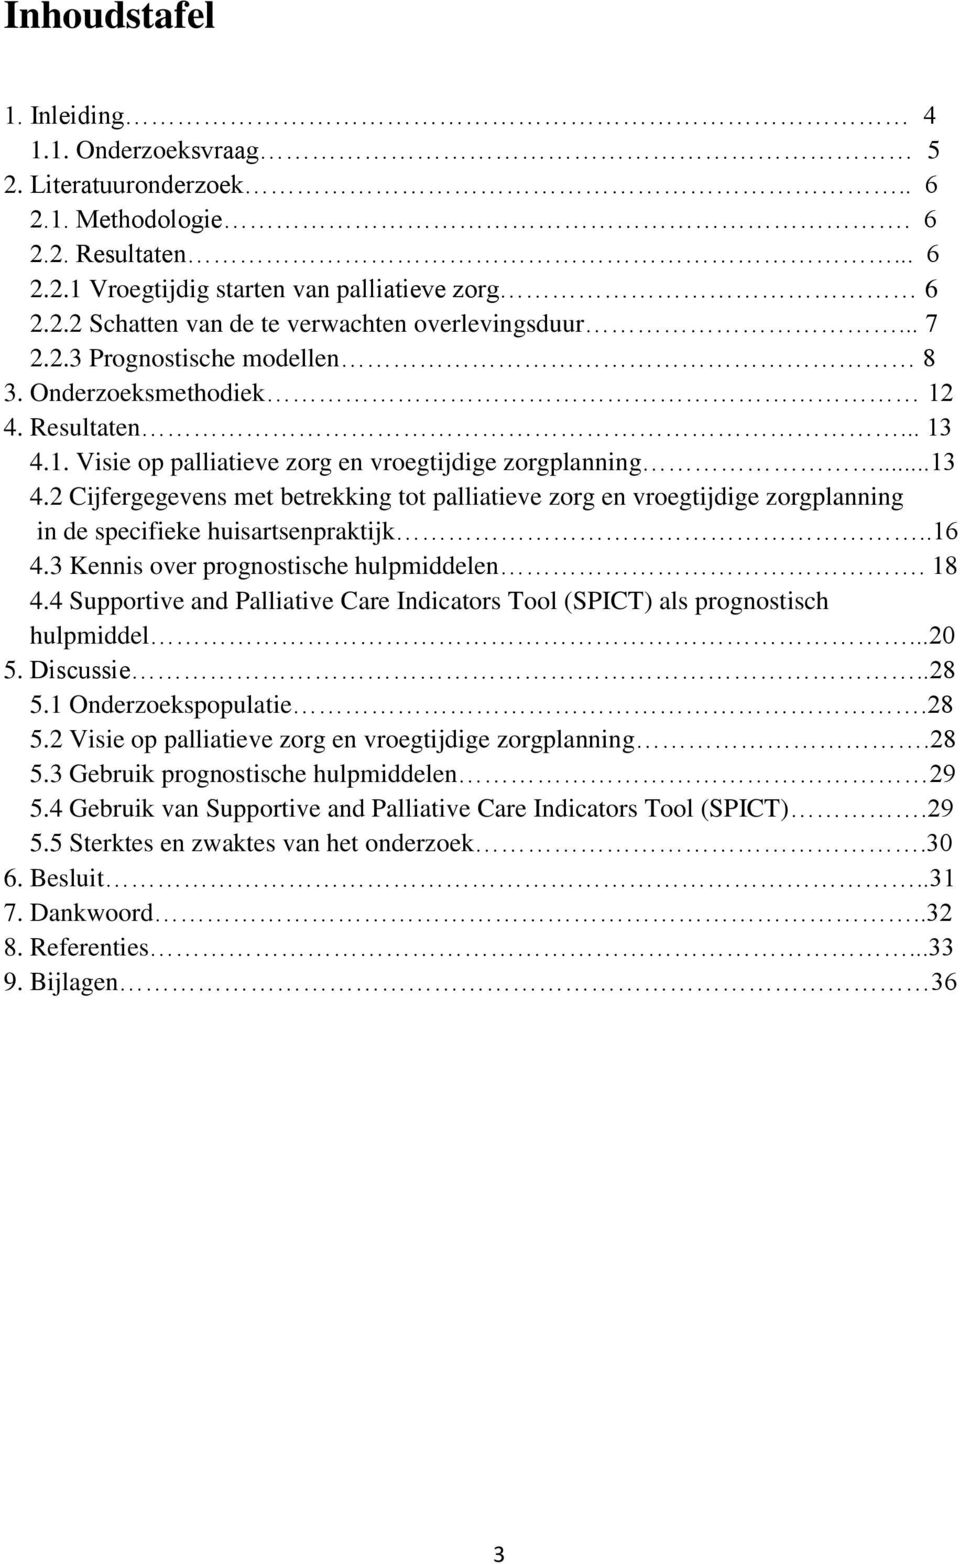 .16 4.3 Kennis ver prgnstische hulpmiddelen. 18 4.4 Supprtive and Palliative Care Indicatrs Tl (SPICT) als prgnstisch hulpmiddel...20 5. Discussie..28 5.